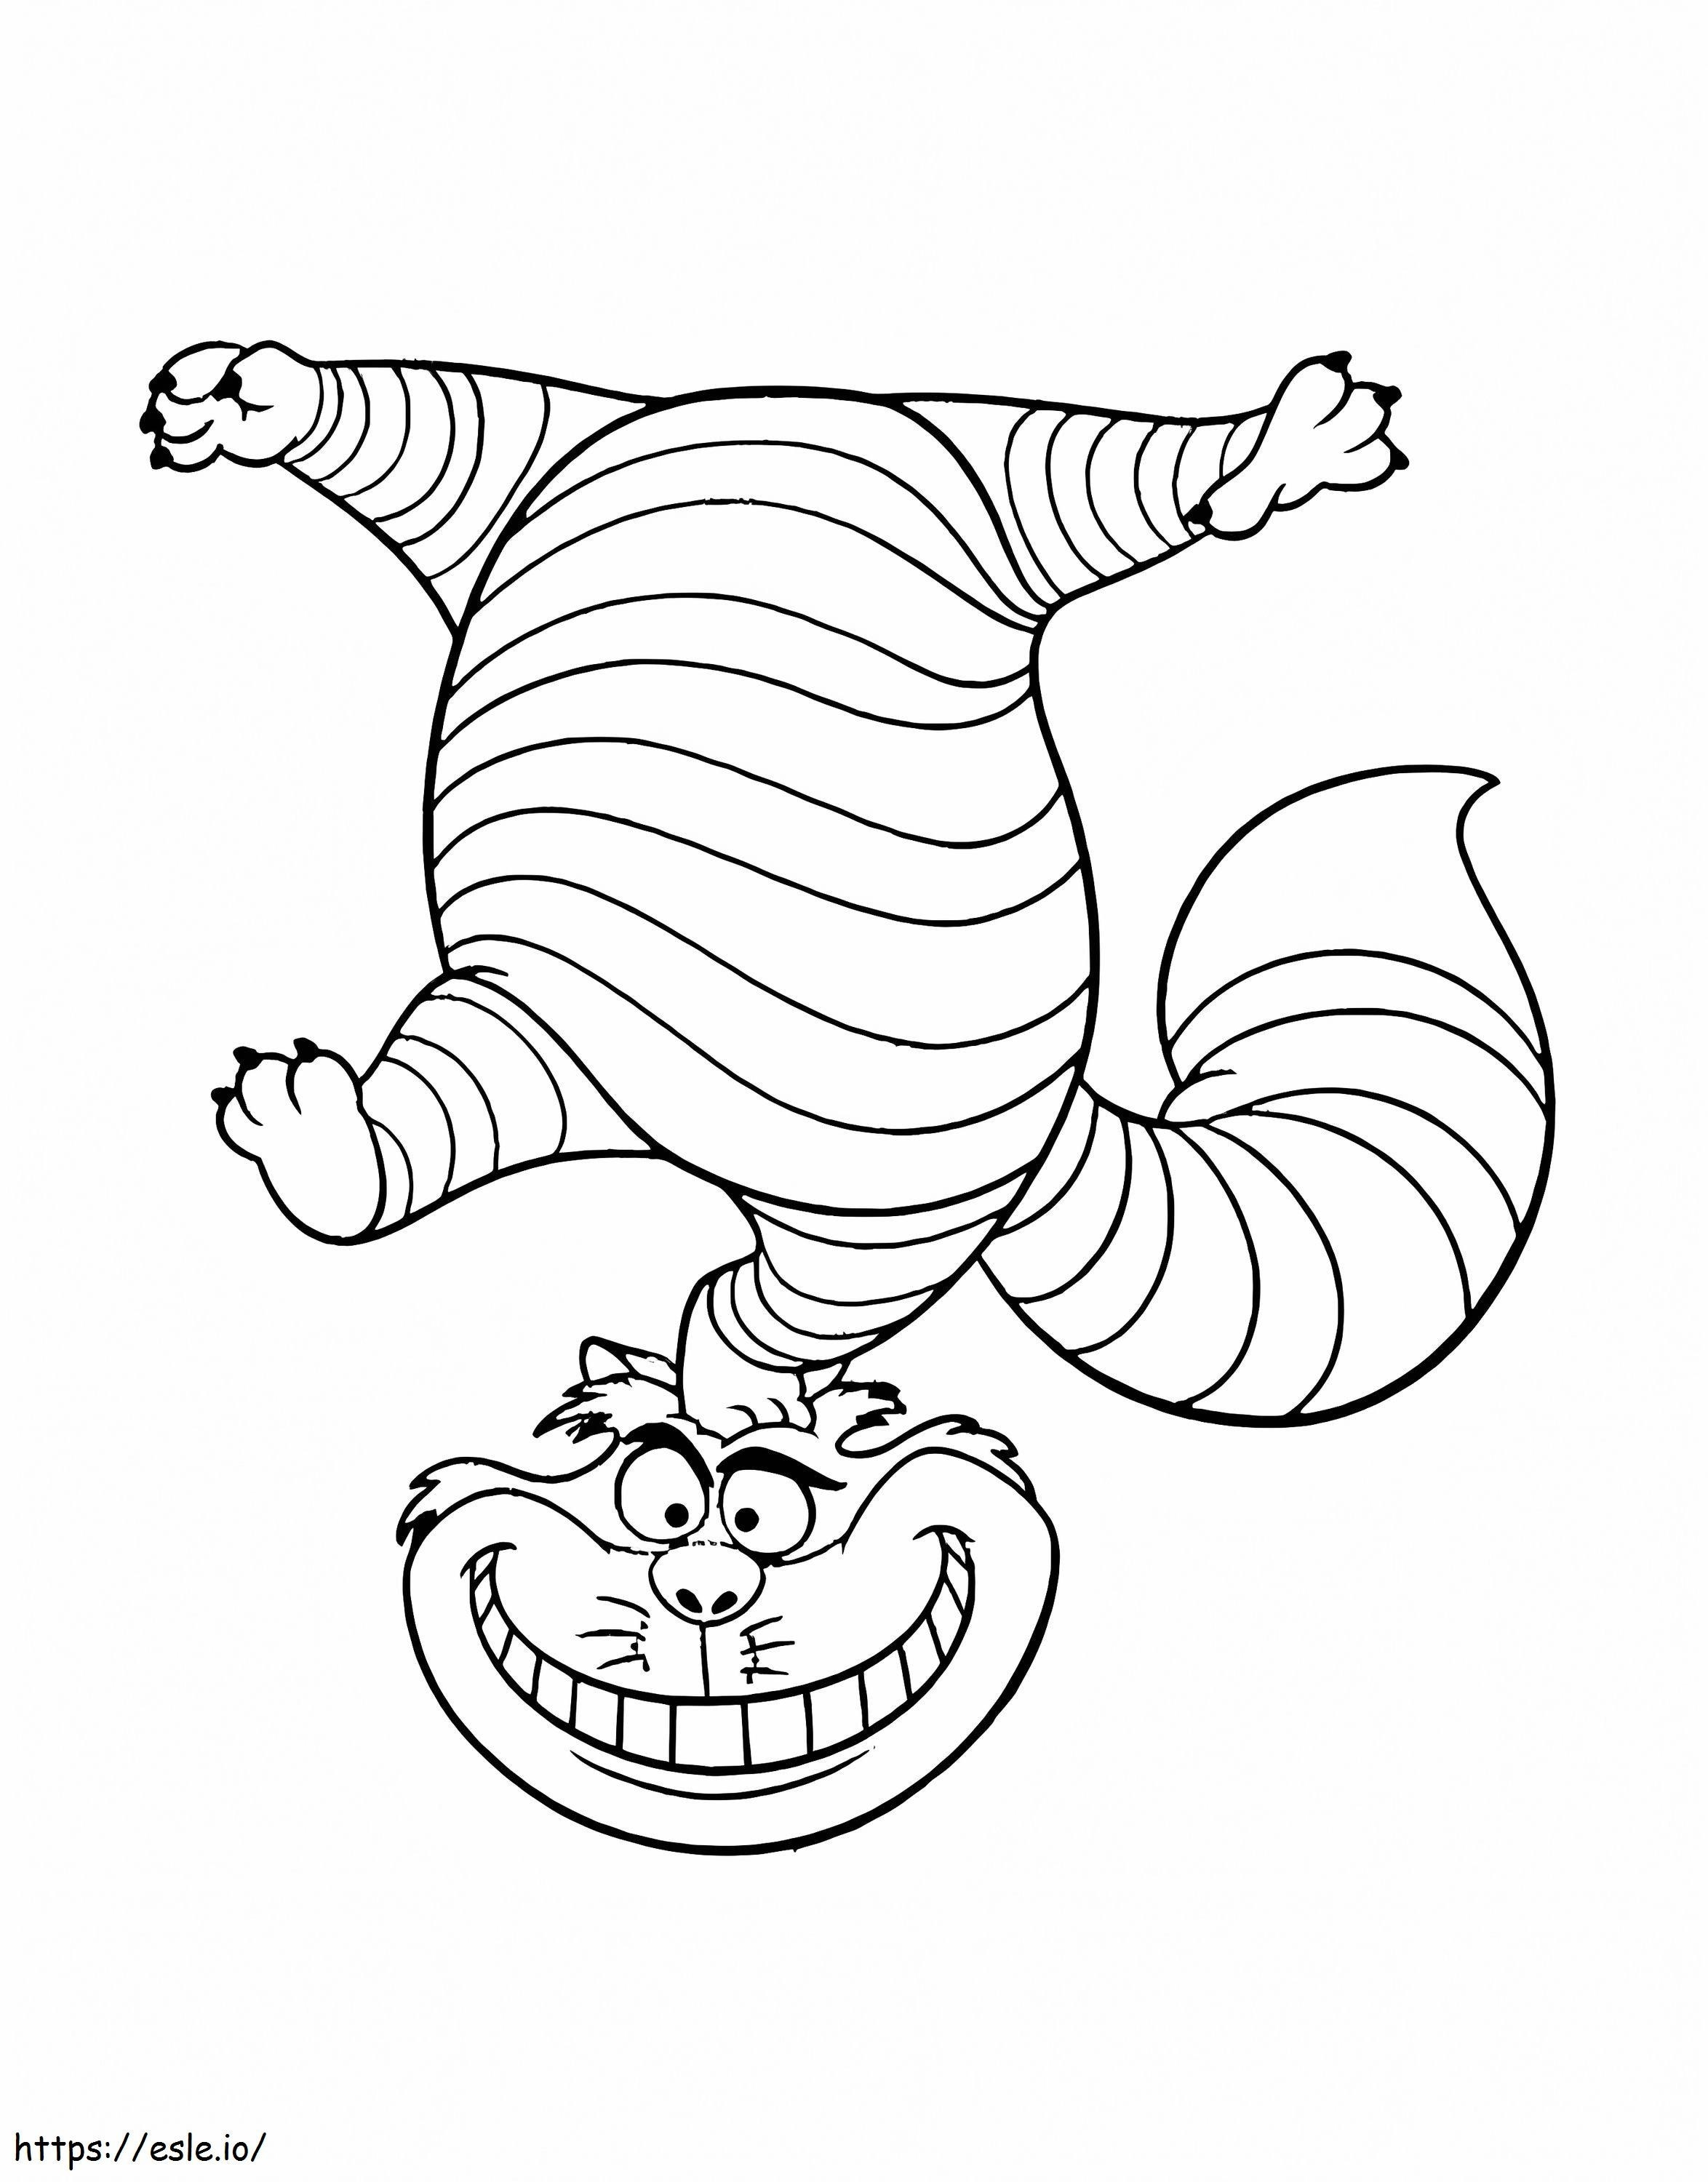 Coloriage Chat du Cheshire drôle à imprimer dessin